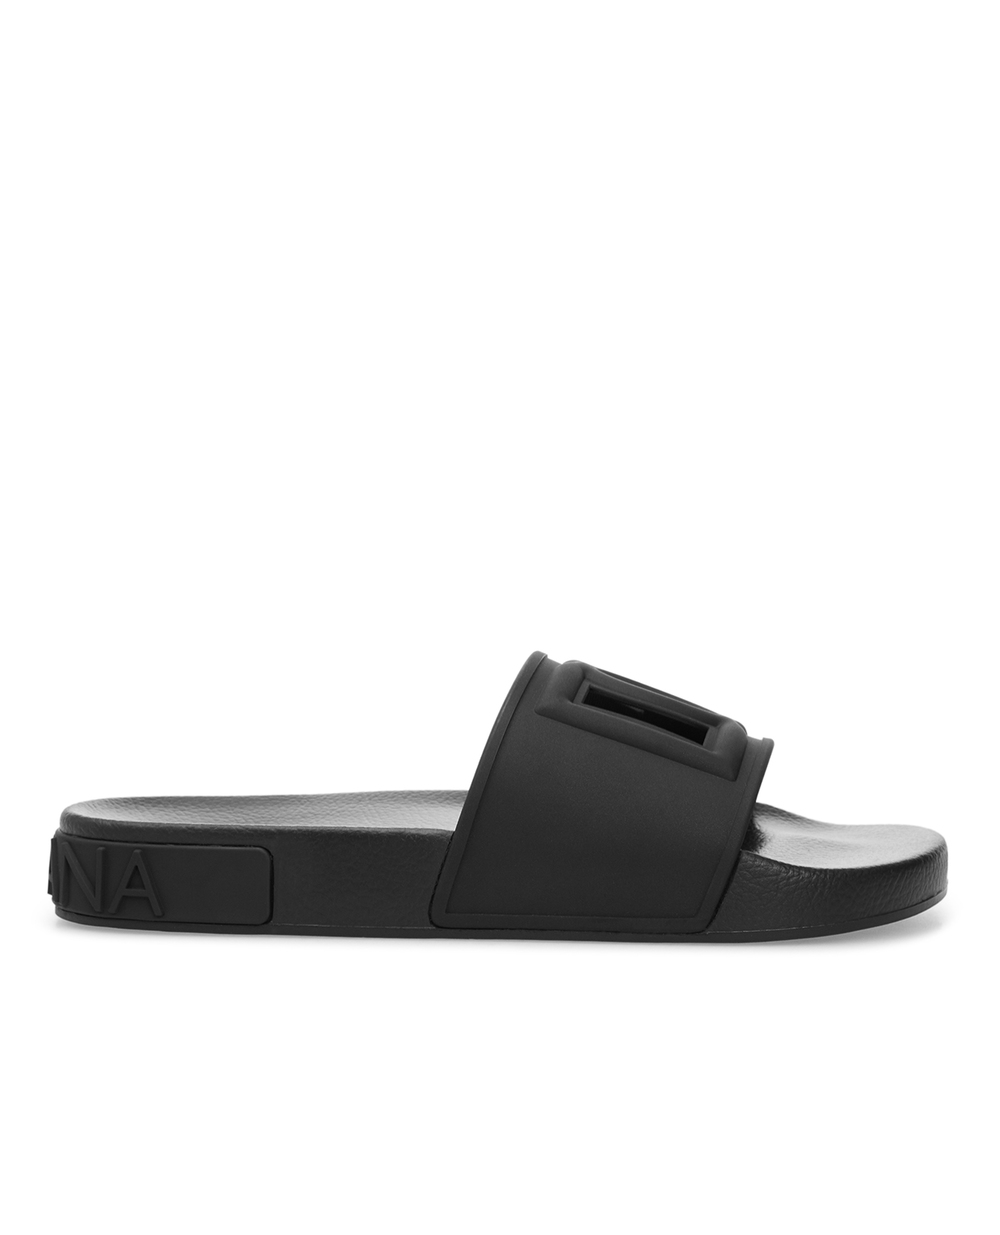 Слайдеры Dolce&Gabbana CW0143-AO666, черный цвет • Купить в интернет-магазине Kameron